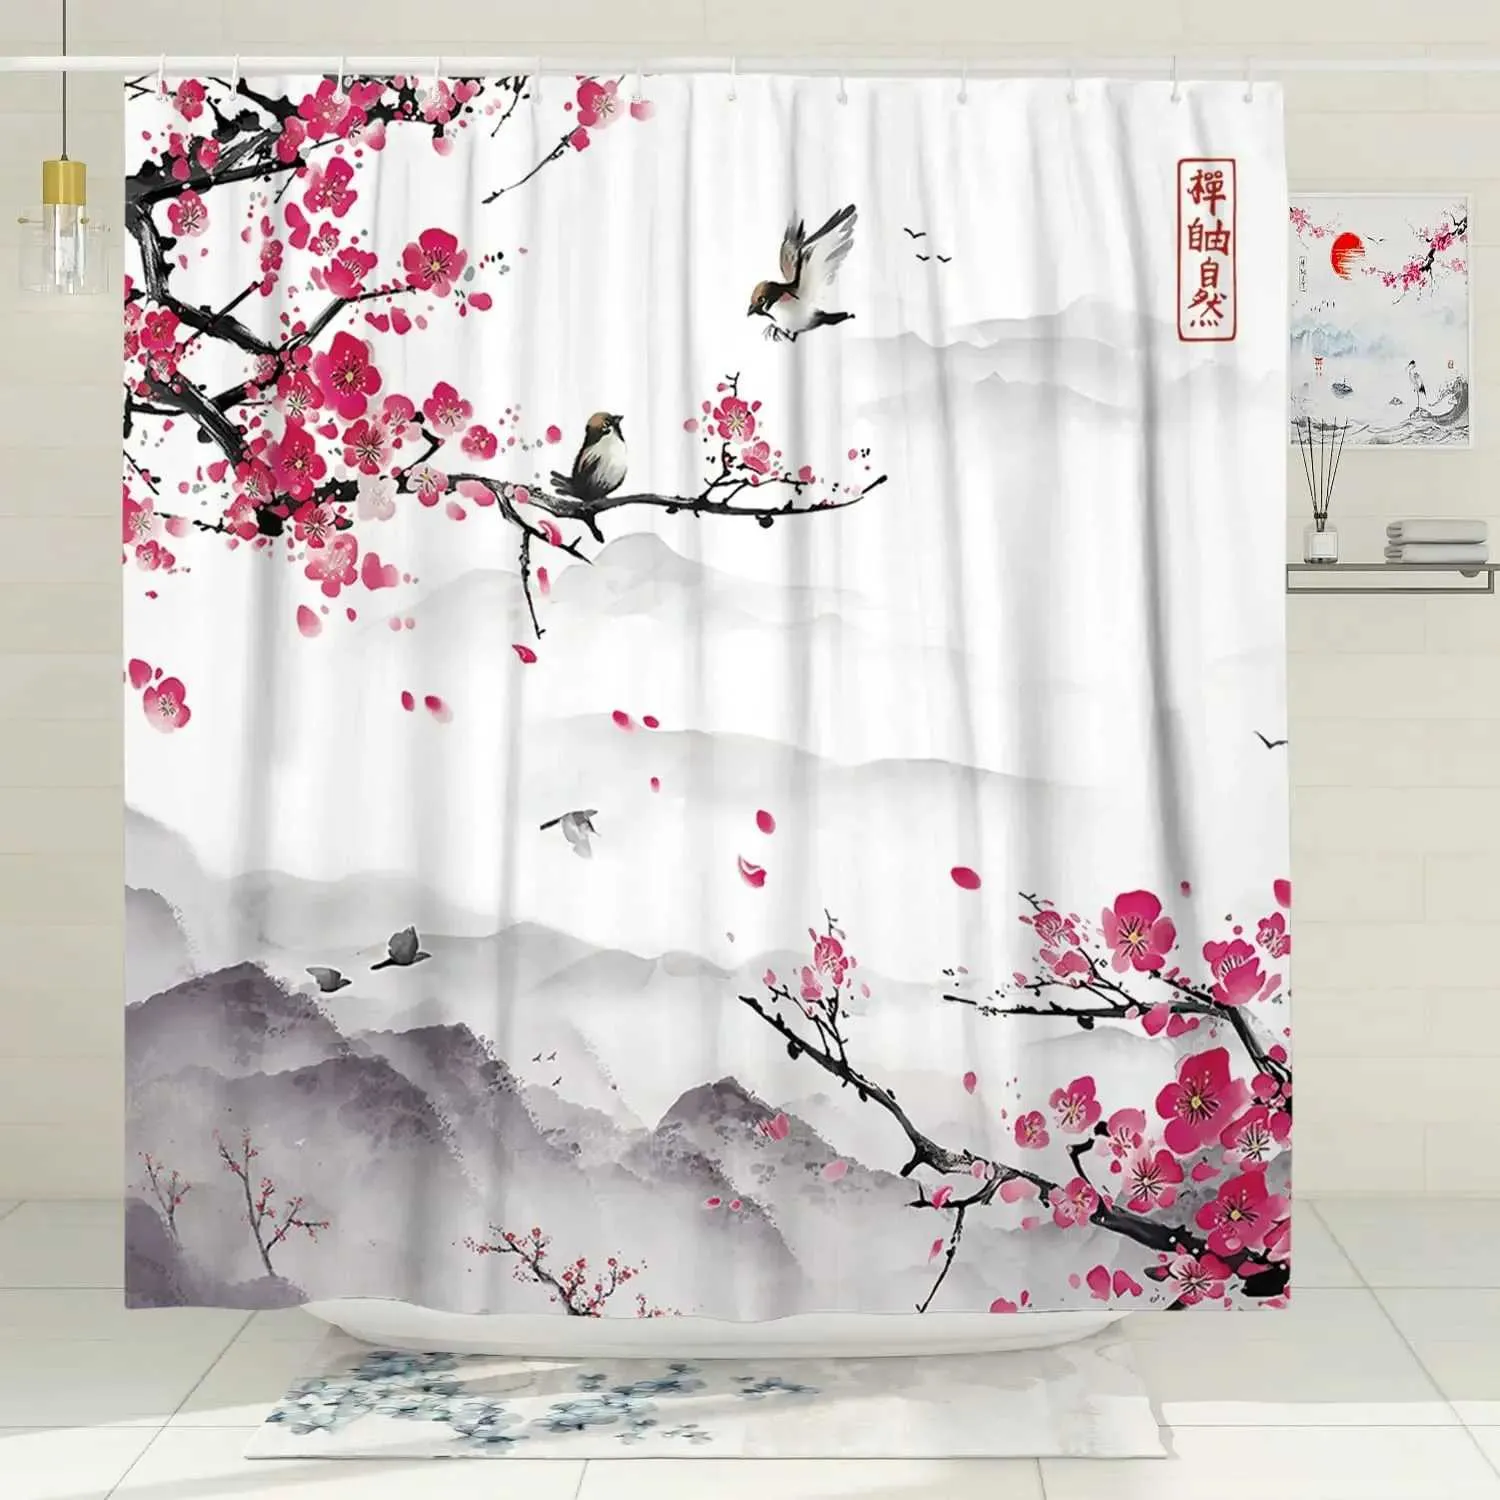 シャワーカーテンピンクの桜の桃の花シャワーカーテンセット花白い背景ガールバスルームポリエステルクロススクリーンフック付き